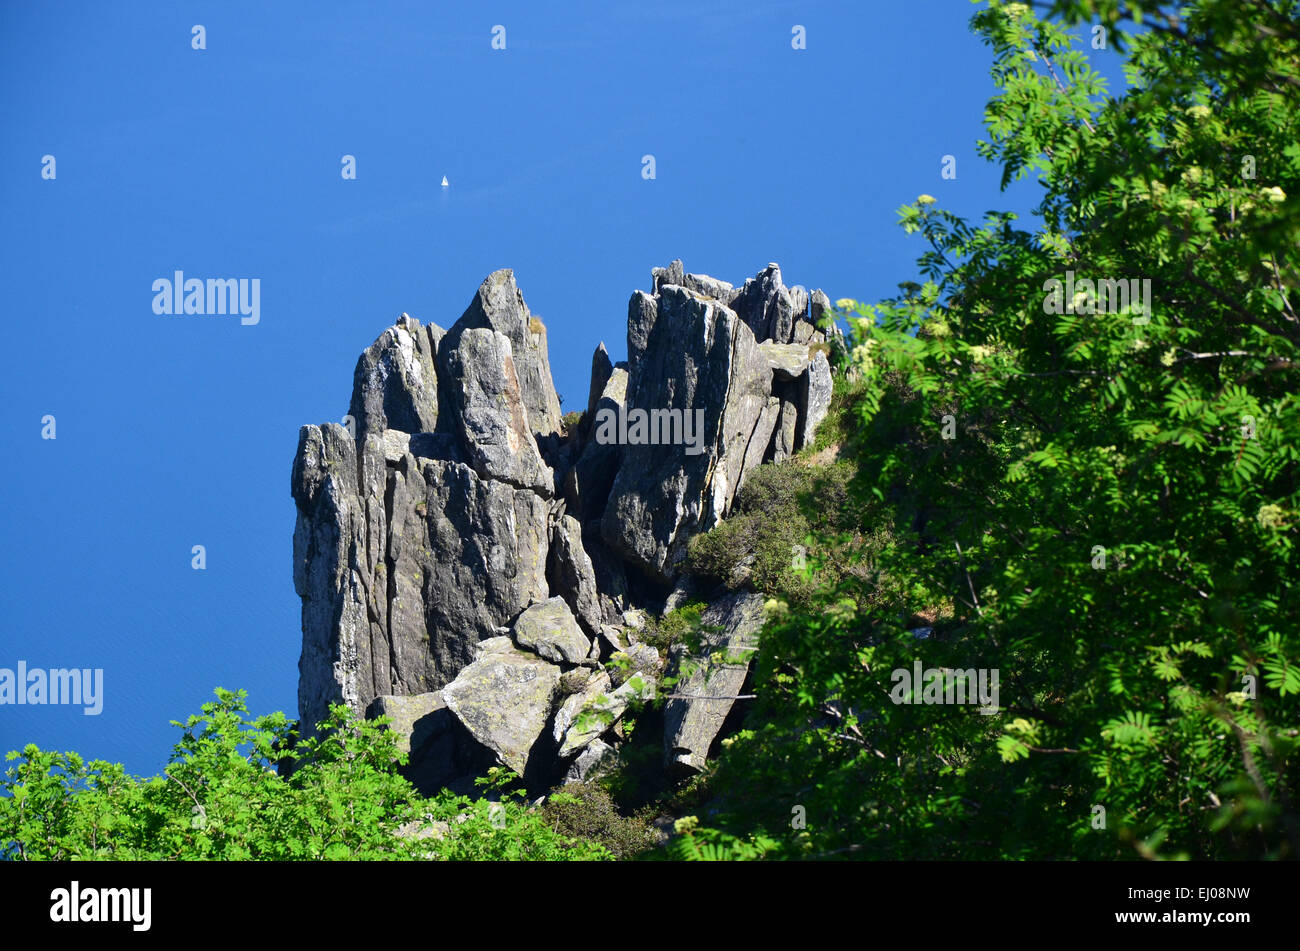 Switzerland, Europe, Ticino, Brissago, Parco Nazionale del Locarnese, rock, cliff, lake, Lago di Maggiore Stock Photo